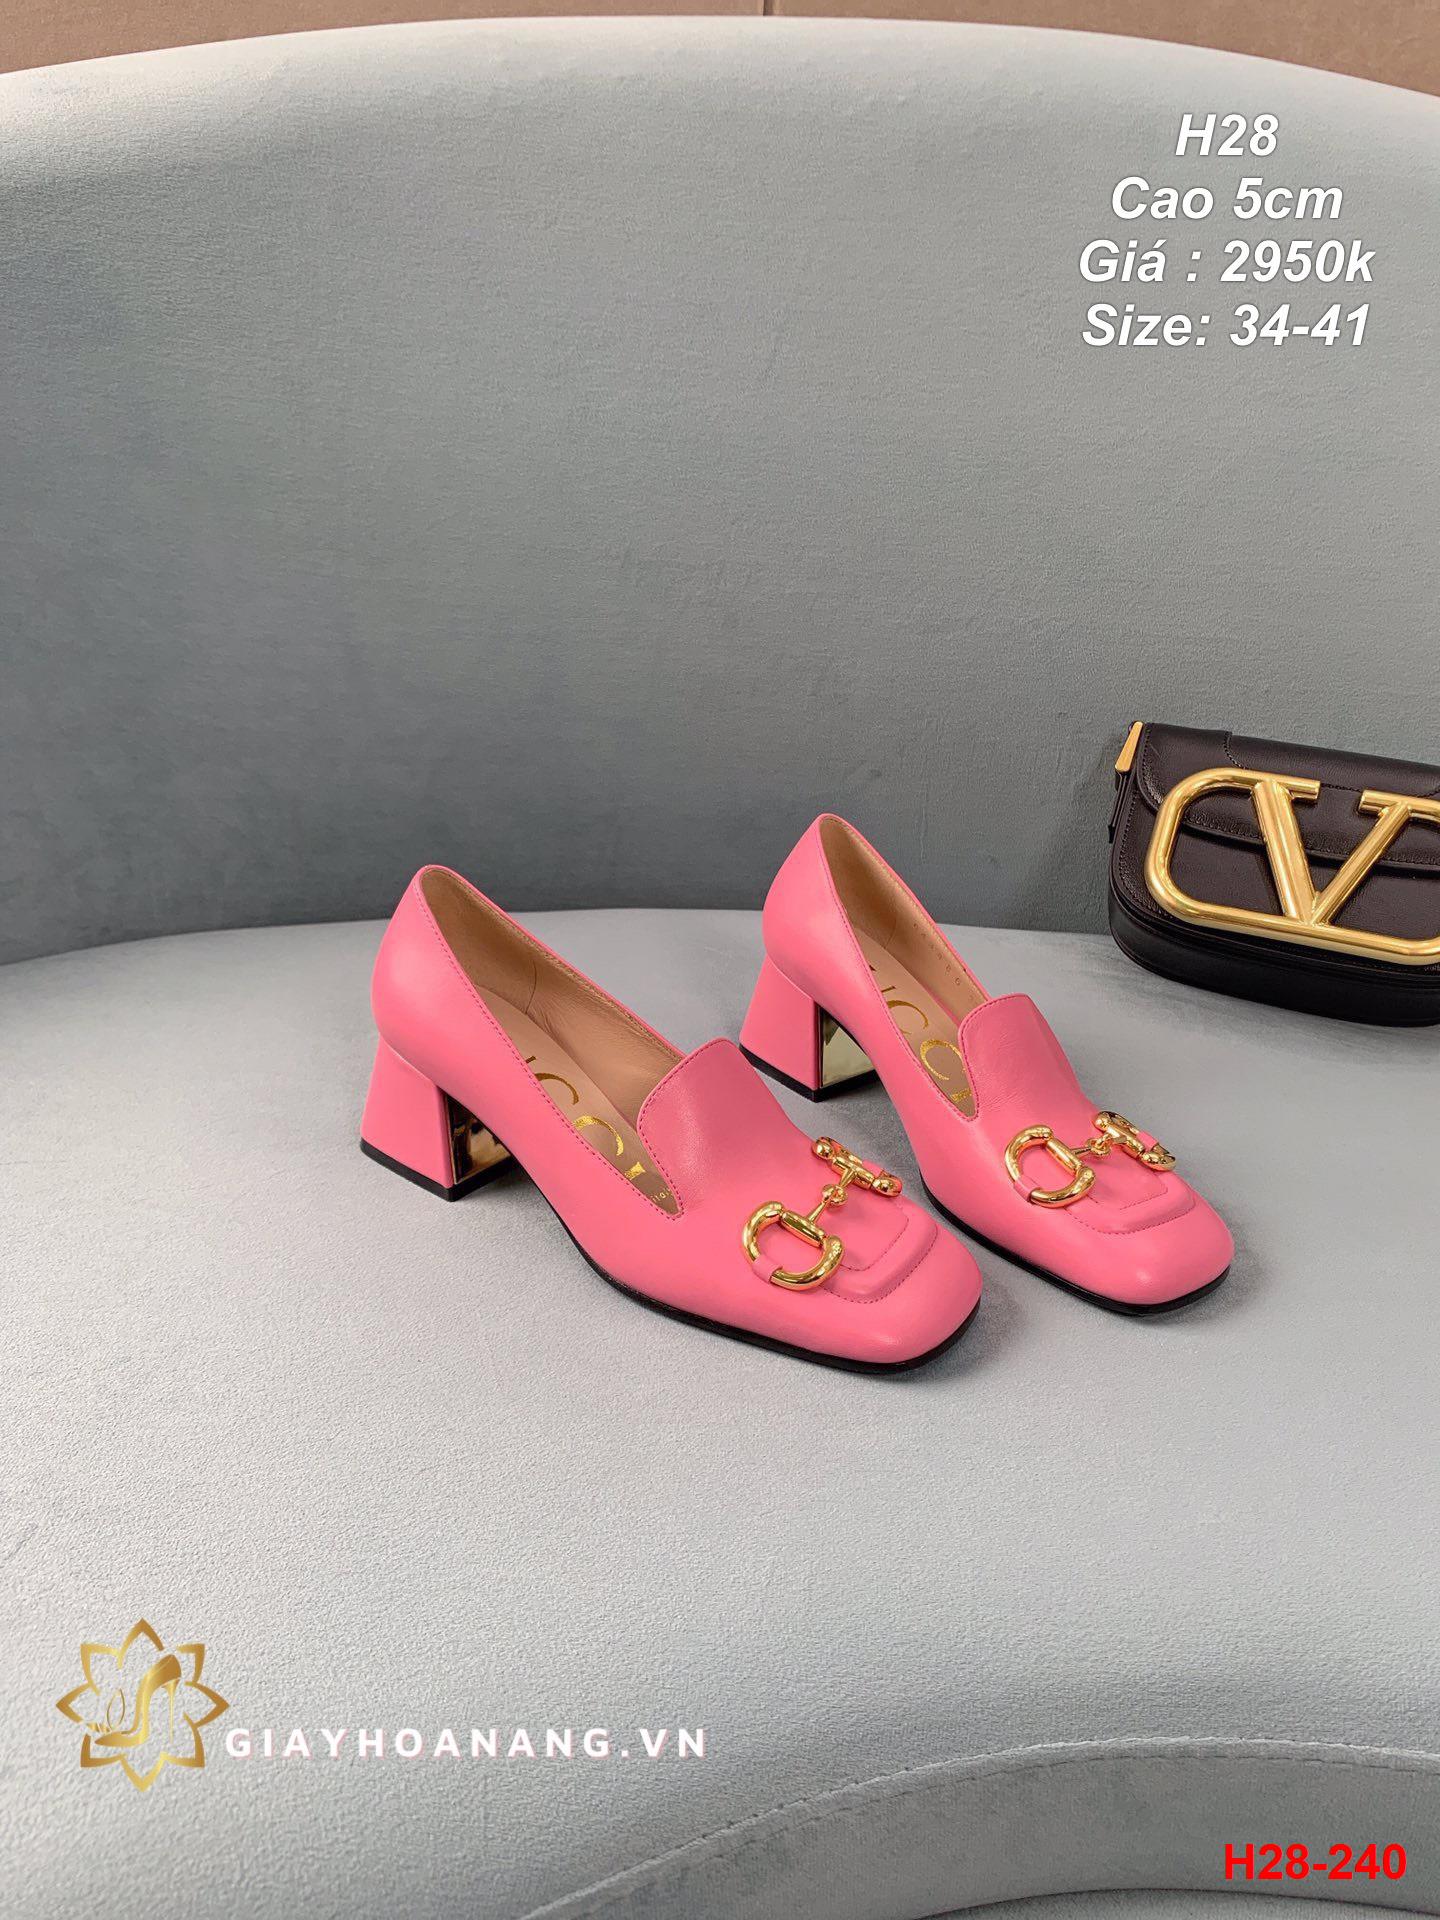 H28-240 Gucci giày cao 5cm siêu cấp